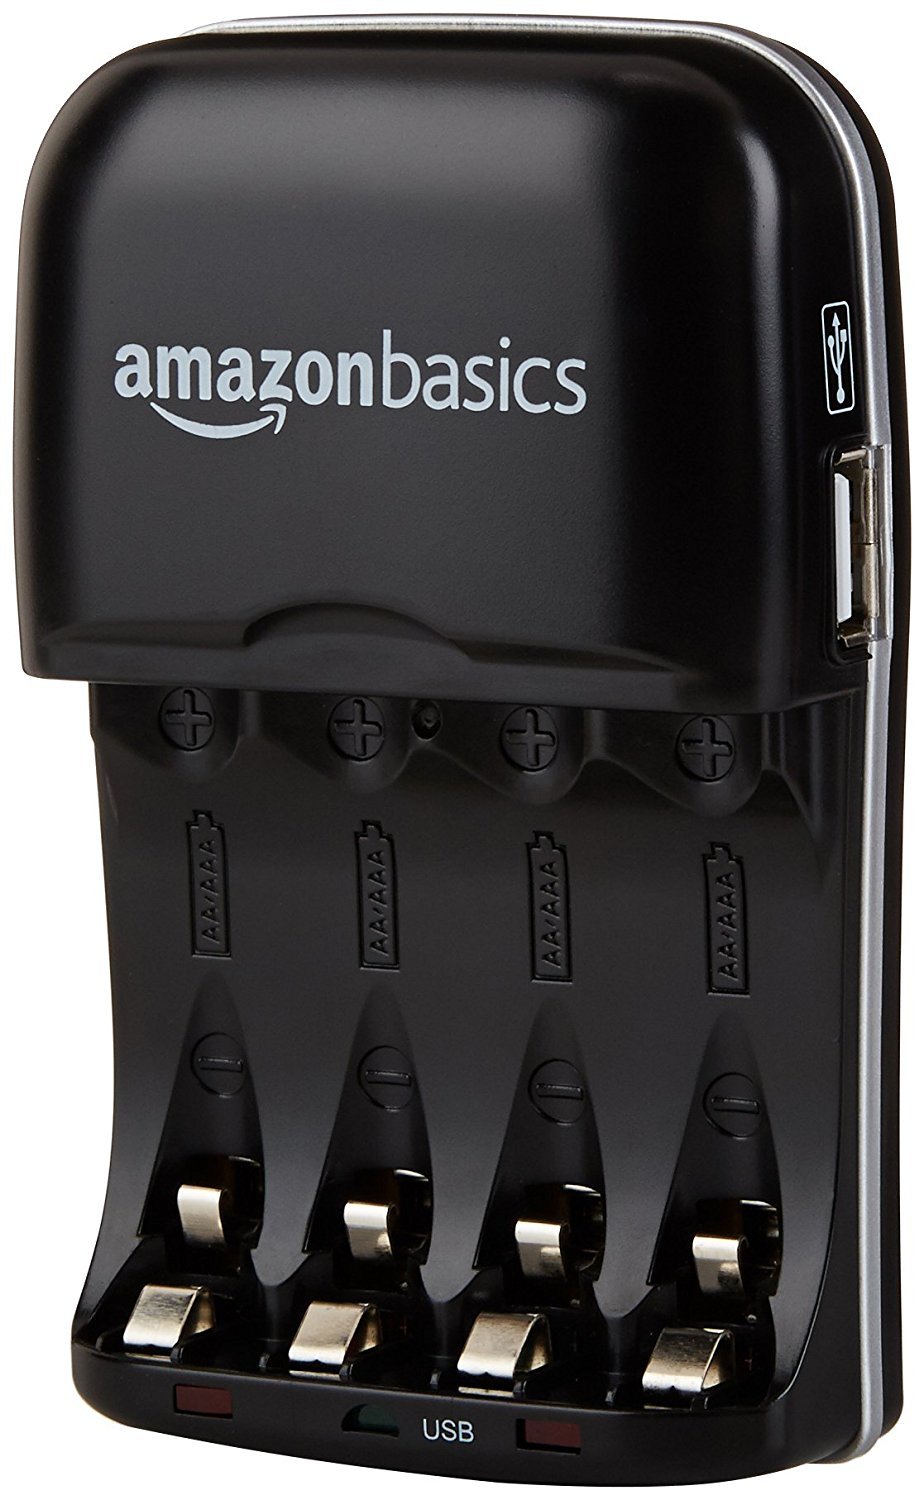 Amazon Basics charger